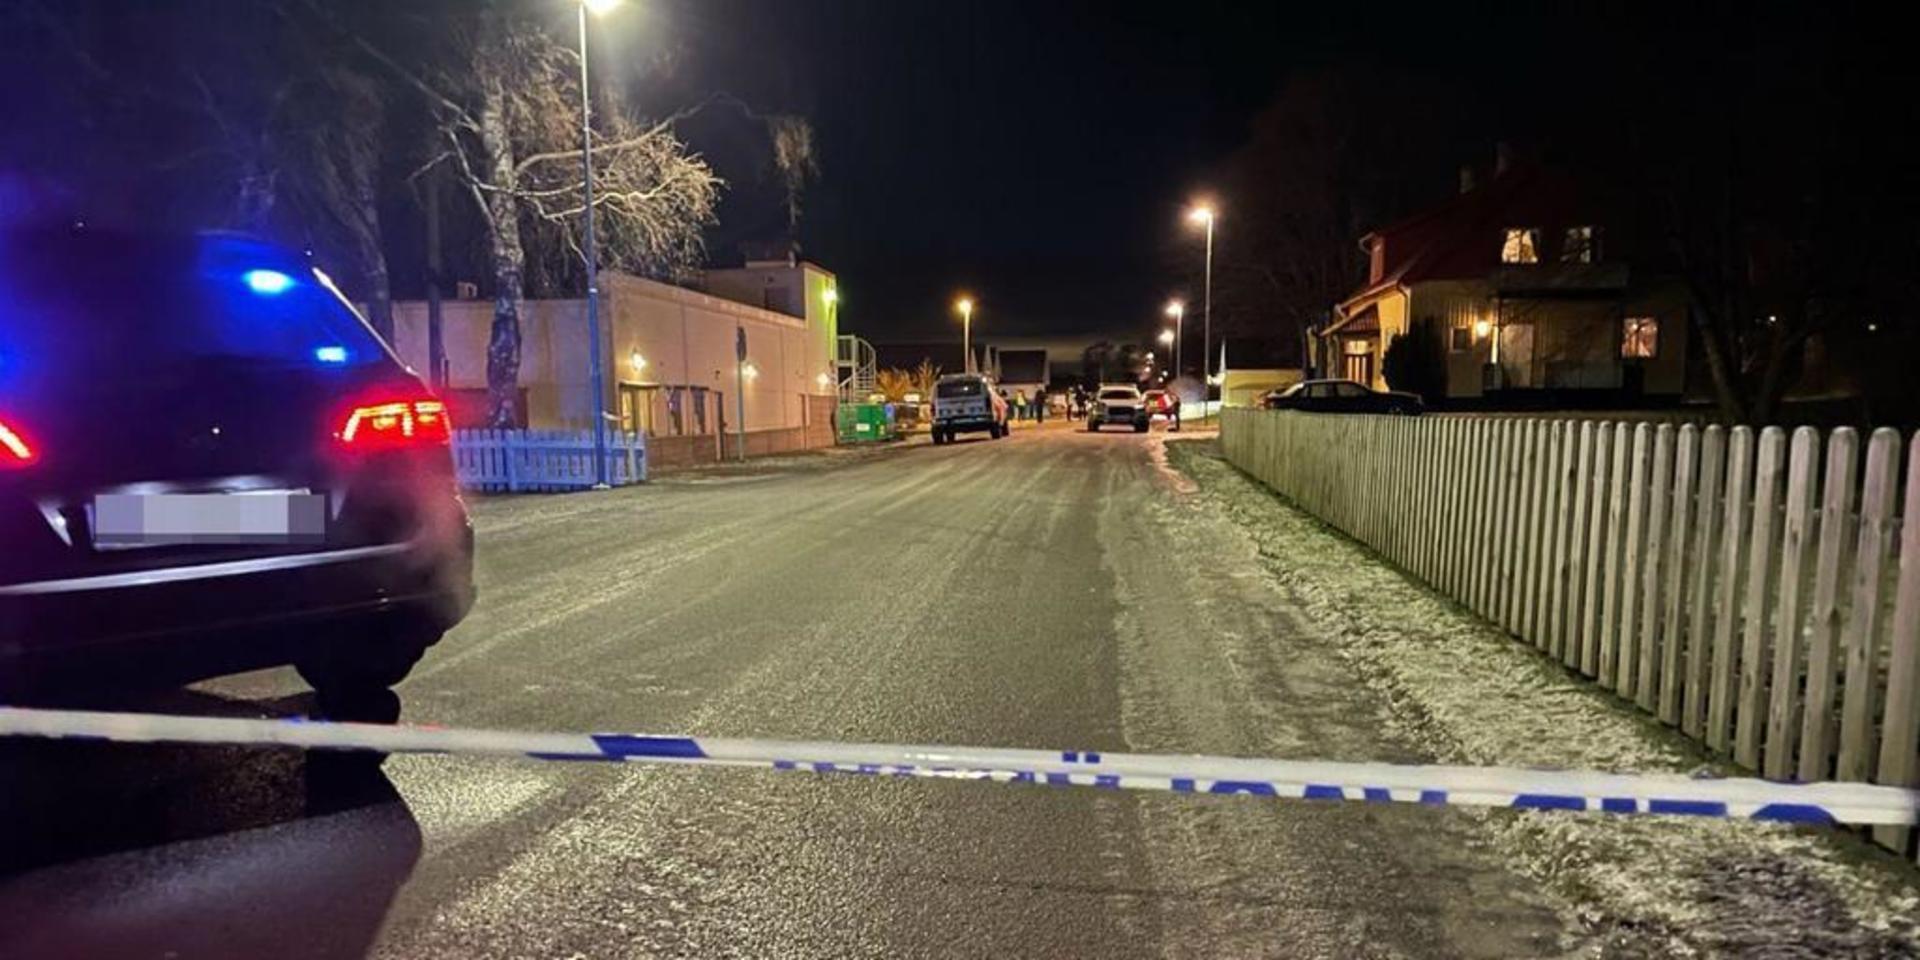 Polisen var snabbt på plats och spärrade av platsen efter mordet i Åsa. Men kvinnan som åtalades för mordet friades av tingsrätten. Åklagaren har nu överklagat till hovrätten.